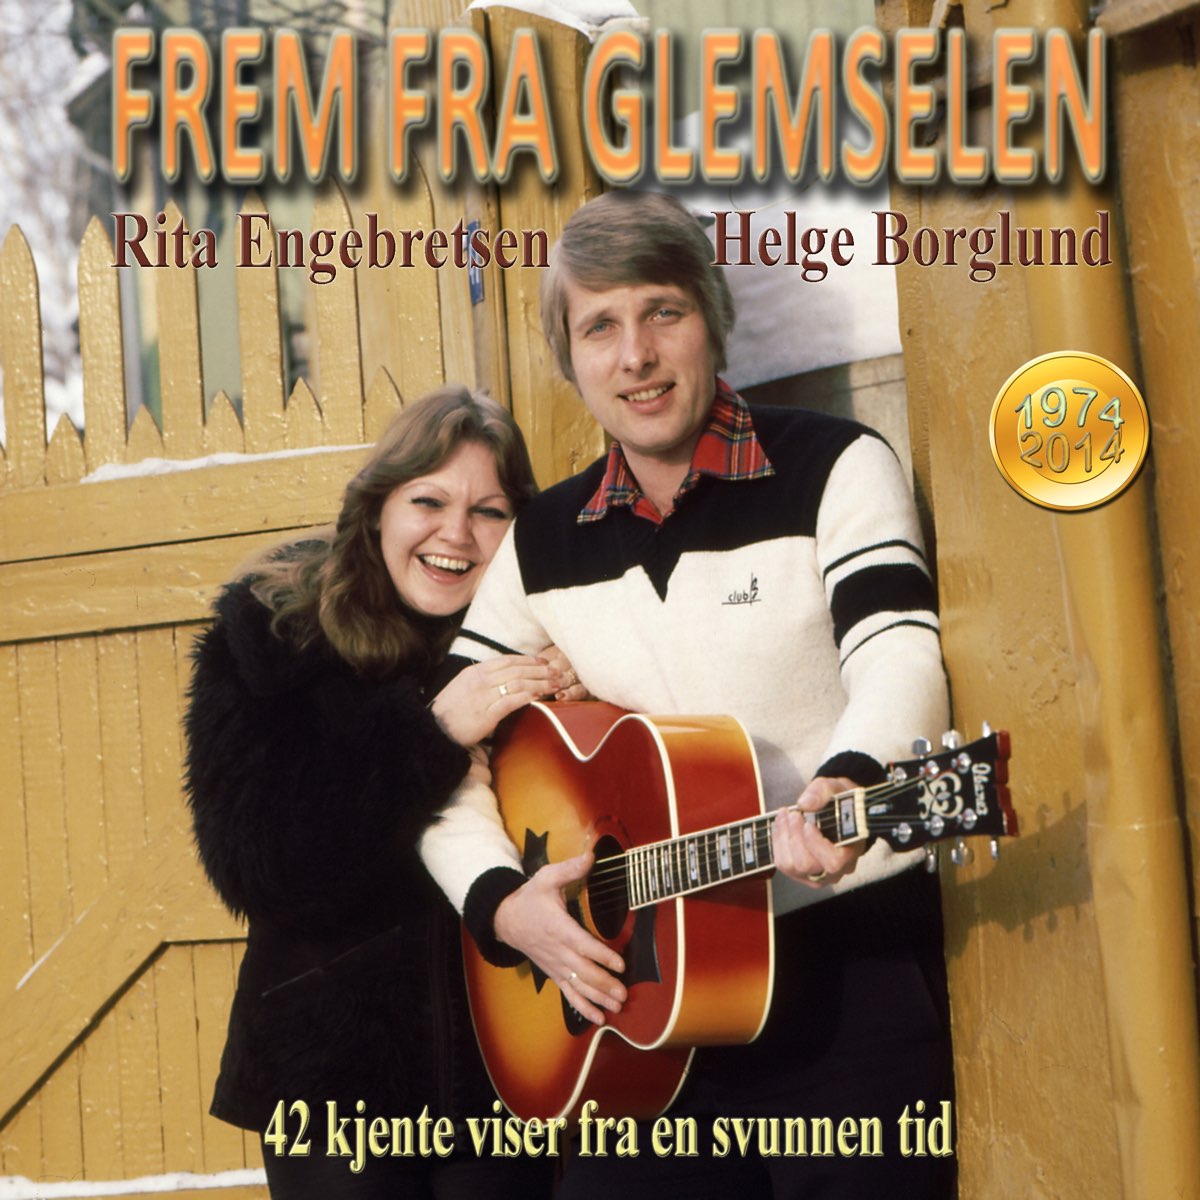 ‎Frem Fra Glemselen - 42 kjente viser - Album by Helge Borglund - Apple ...